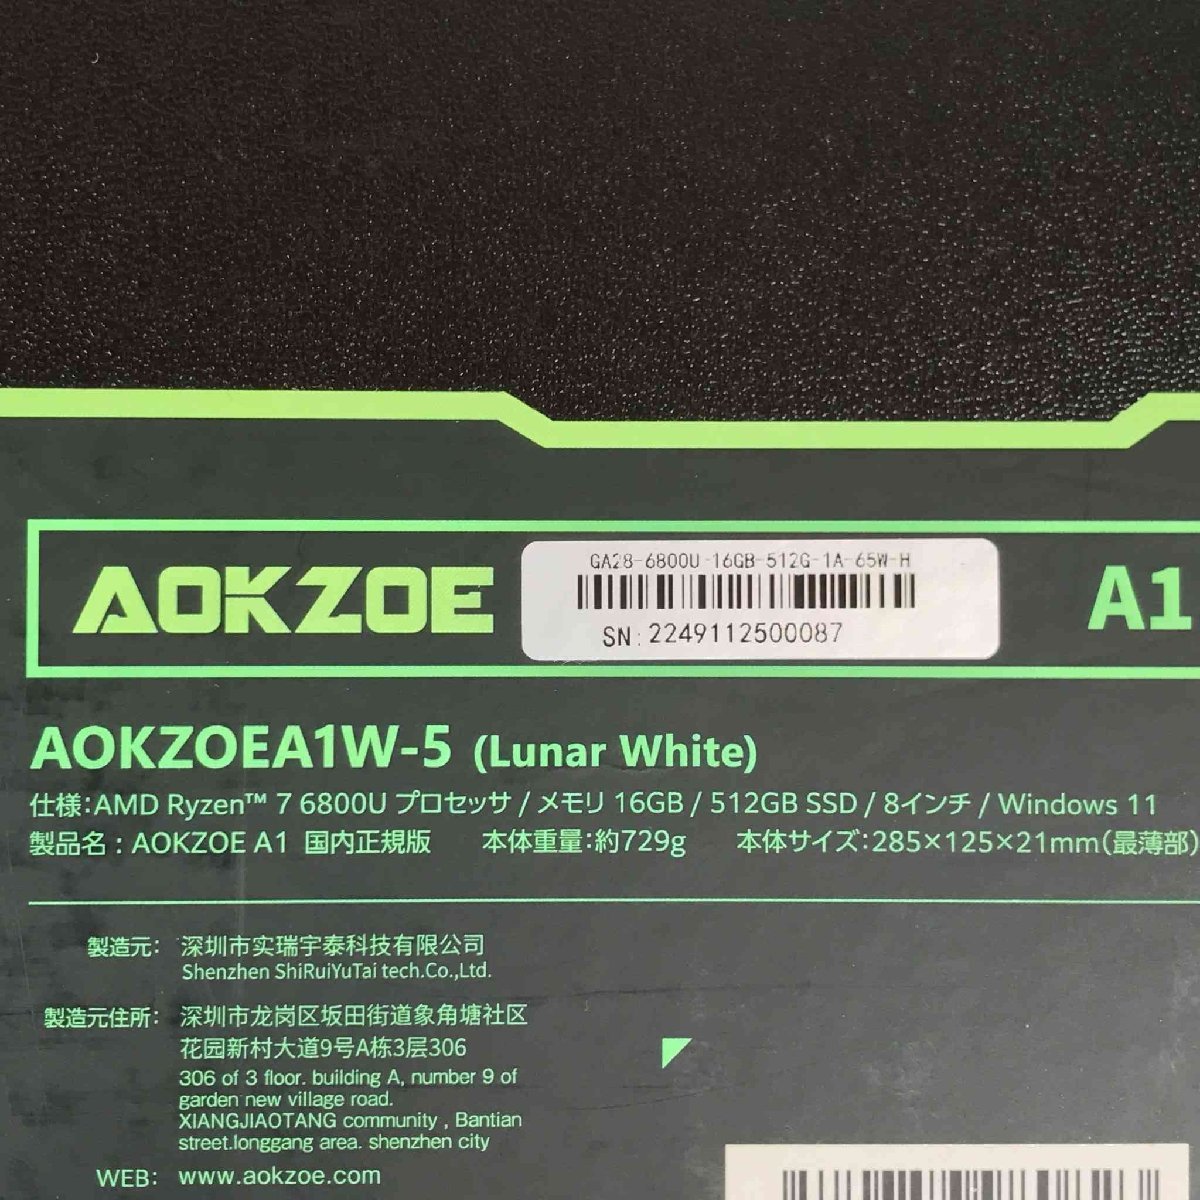 【超美品】AOKZOE A1 AOKZOEA1W-5R/ポータブルゲーミングPC/8インチ/CPU Ryzen 7 6800U/2.7GHz/SSD 512GB/メモリ 16GB/Win11【送料無料】_画像6